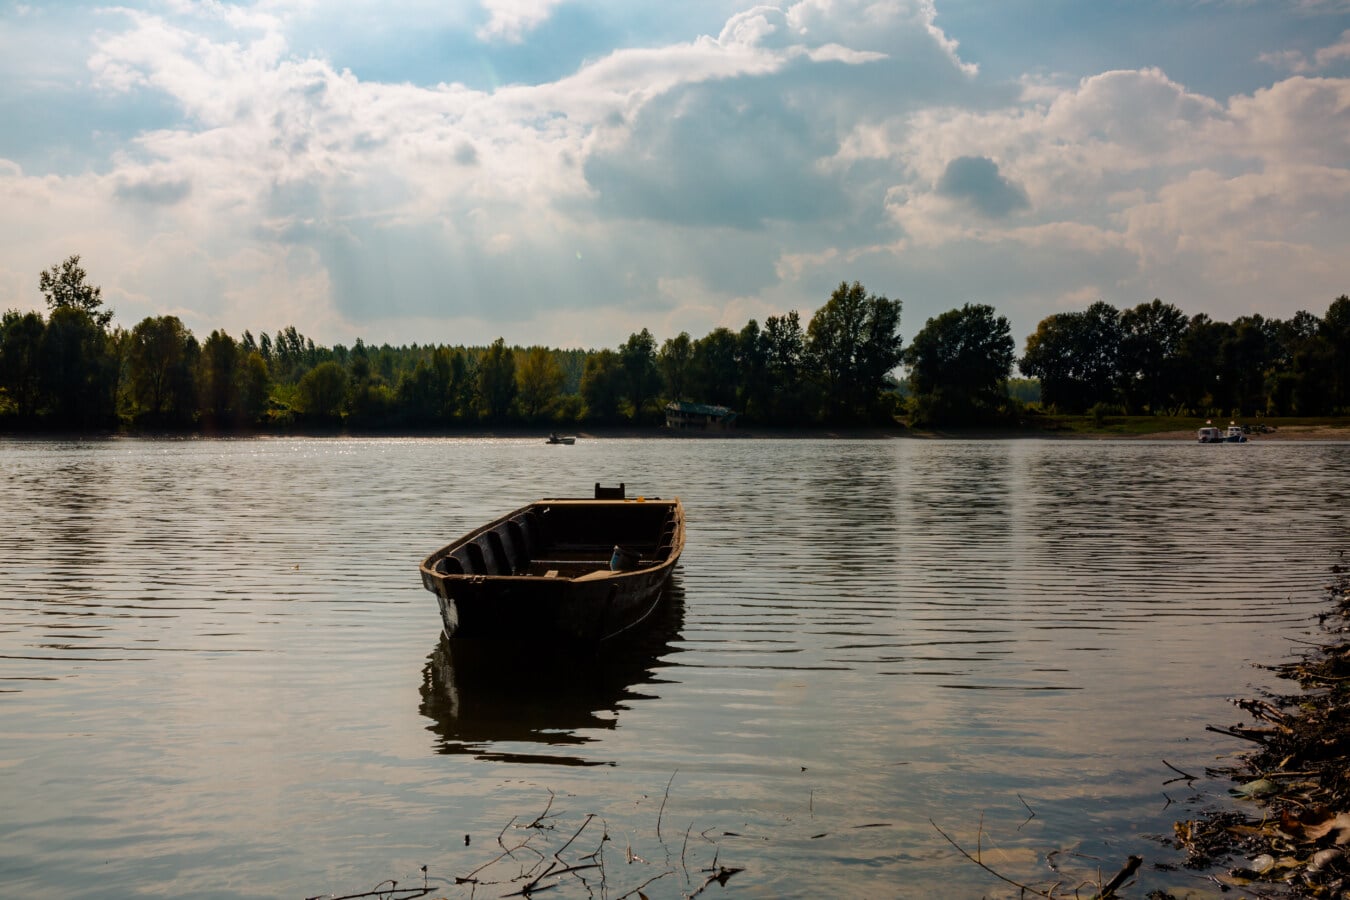 bateau, en bois, flottant, niveau d'eau, après midi, calme, au bord du lac, lac, eau, nature